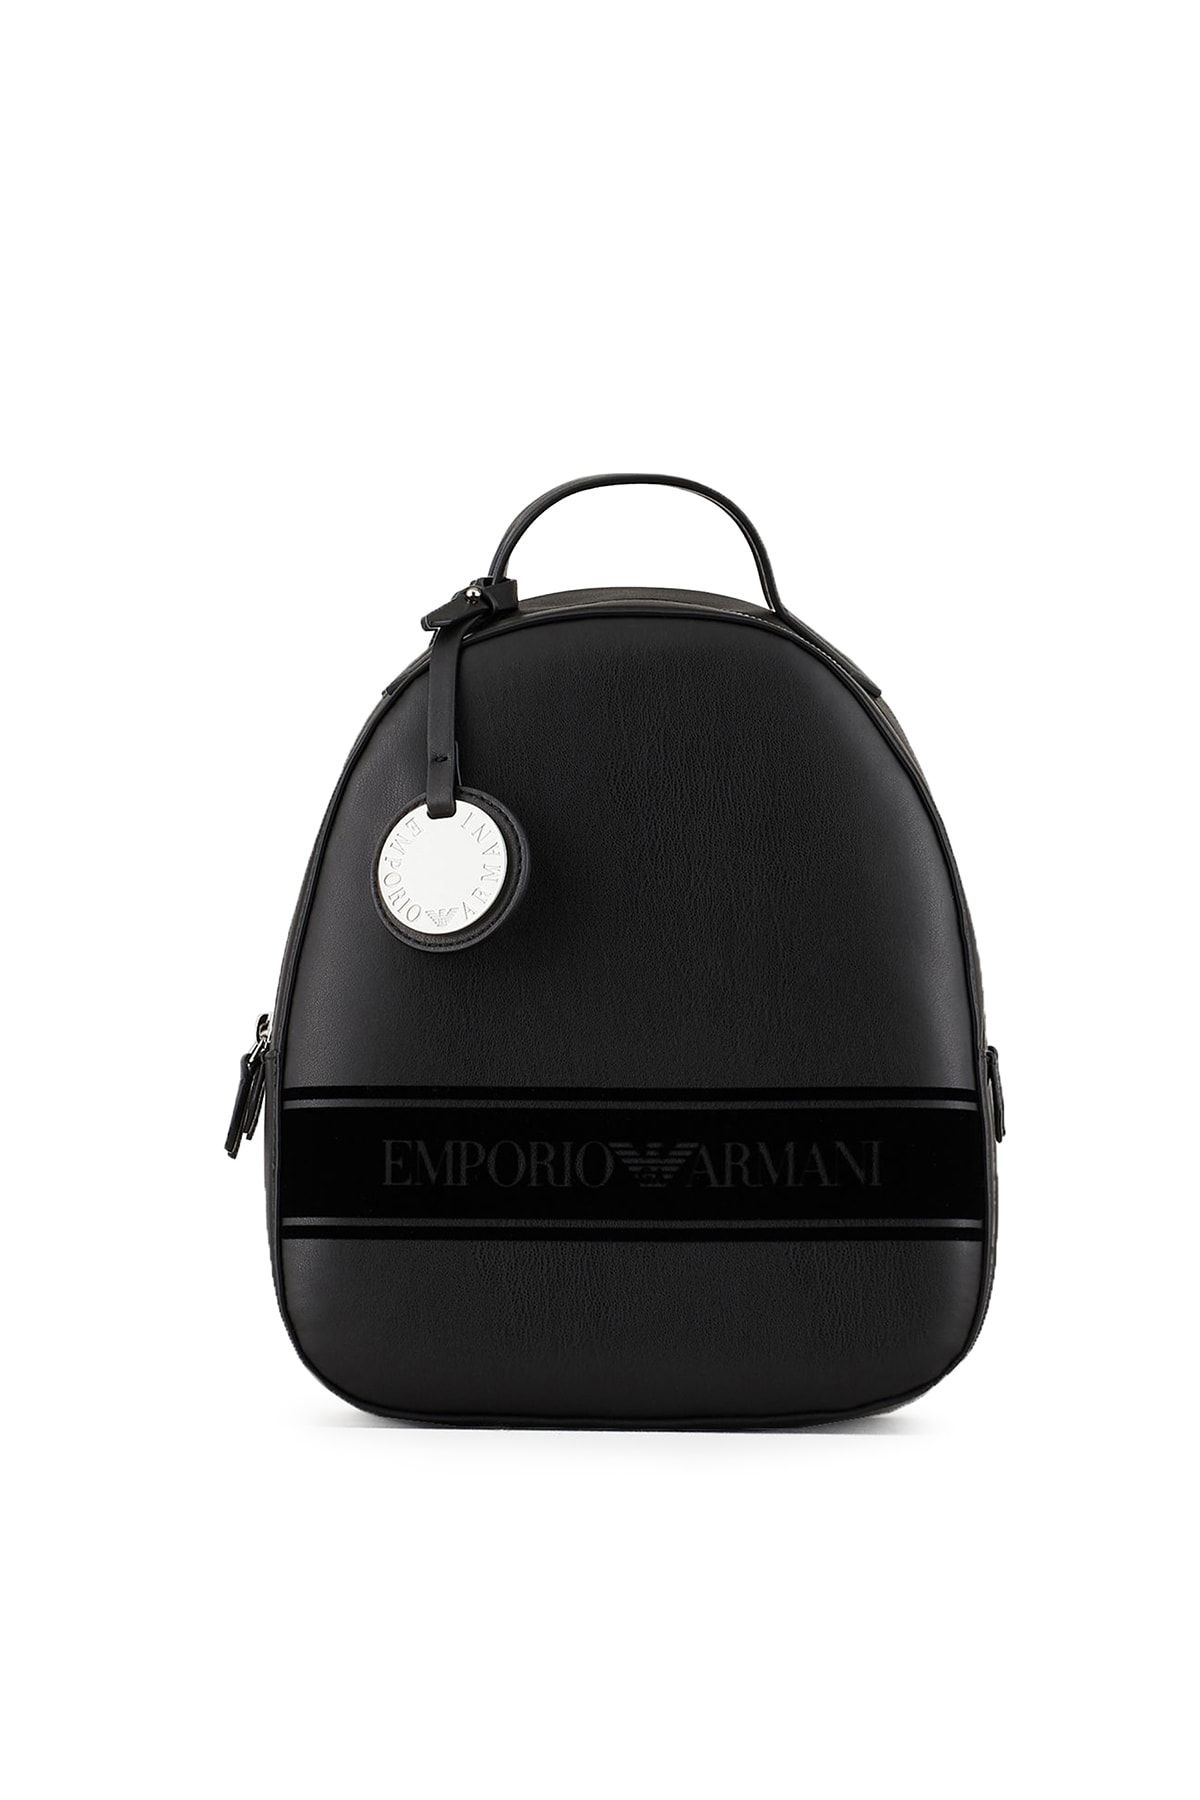 Emporio Armani Kadın Siyah Logo Baskılı Ayarlanabilir Askılı Çanta Y3l024 Yı48e 88291